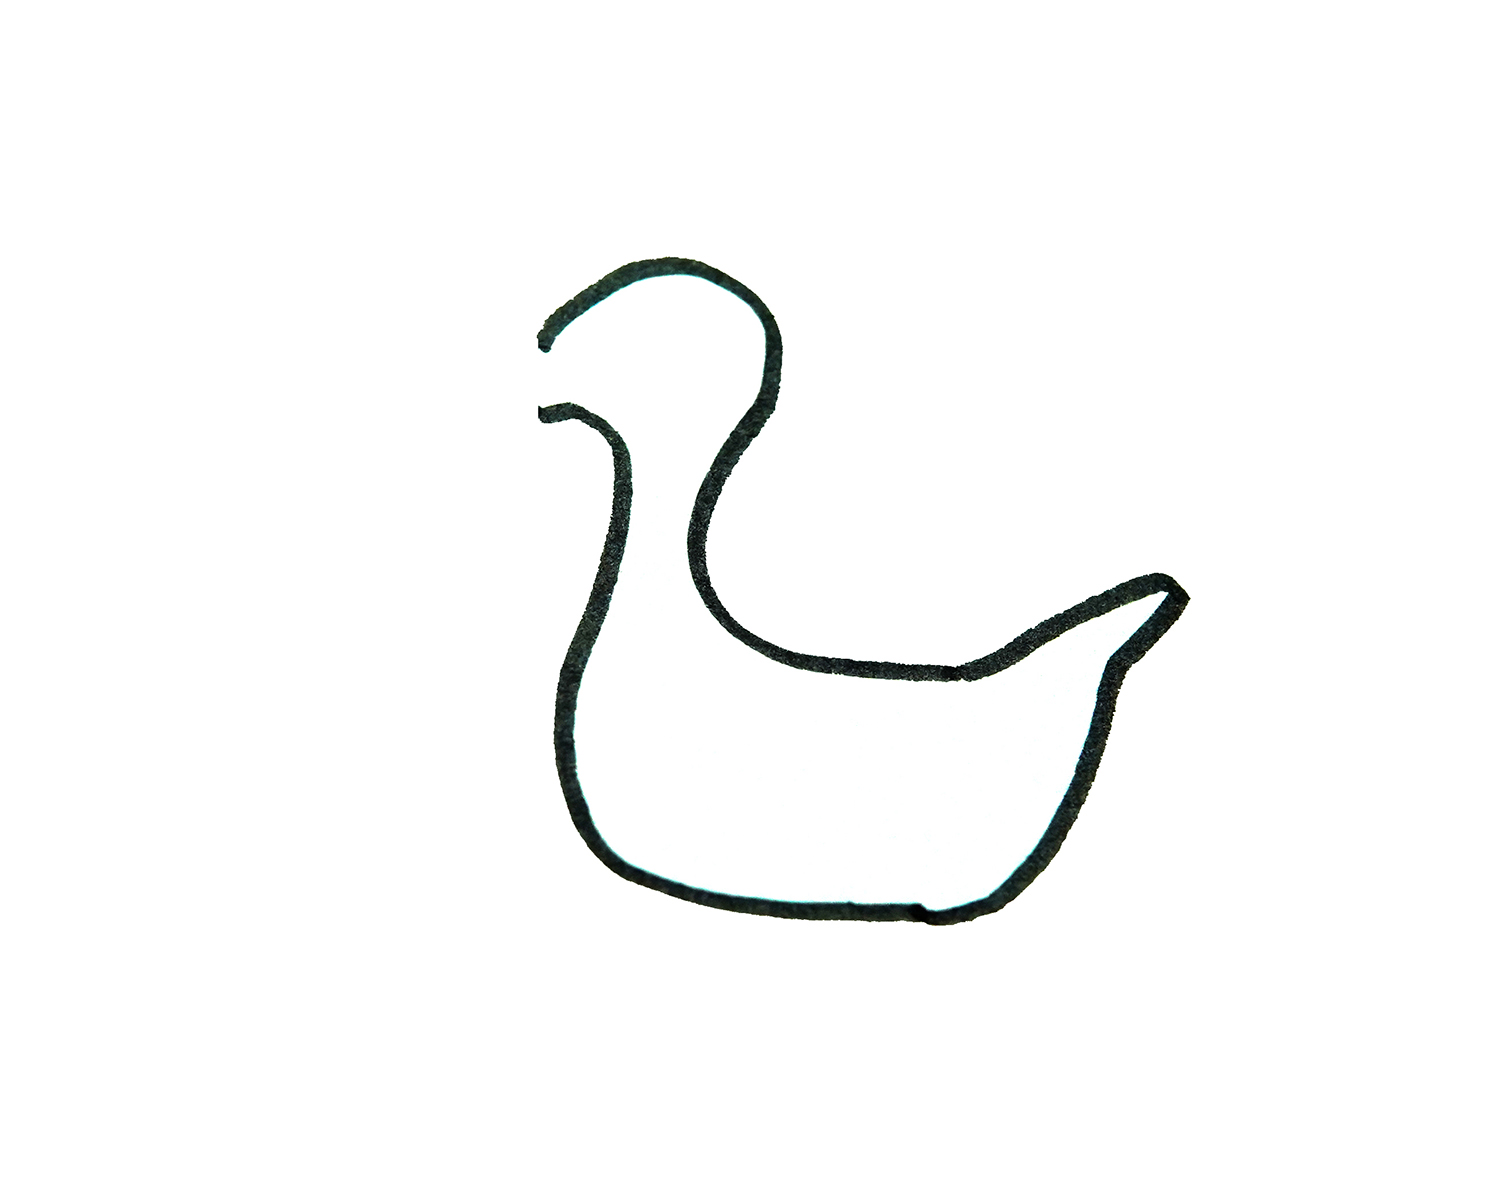 儿童画图片欣赏 小鸭子的画法图解教程💛巧艺网